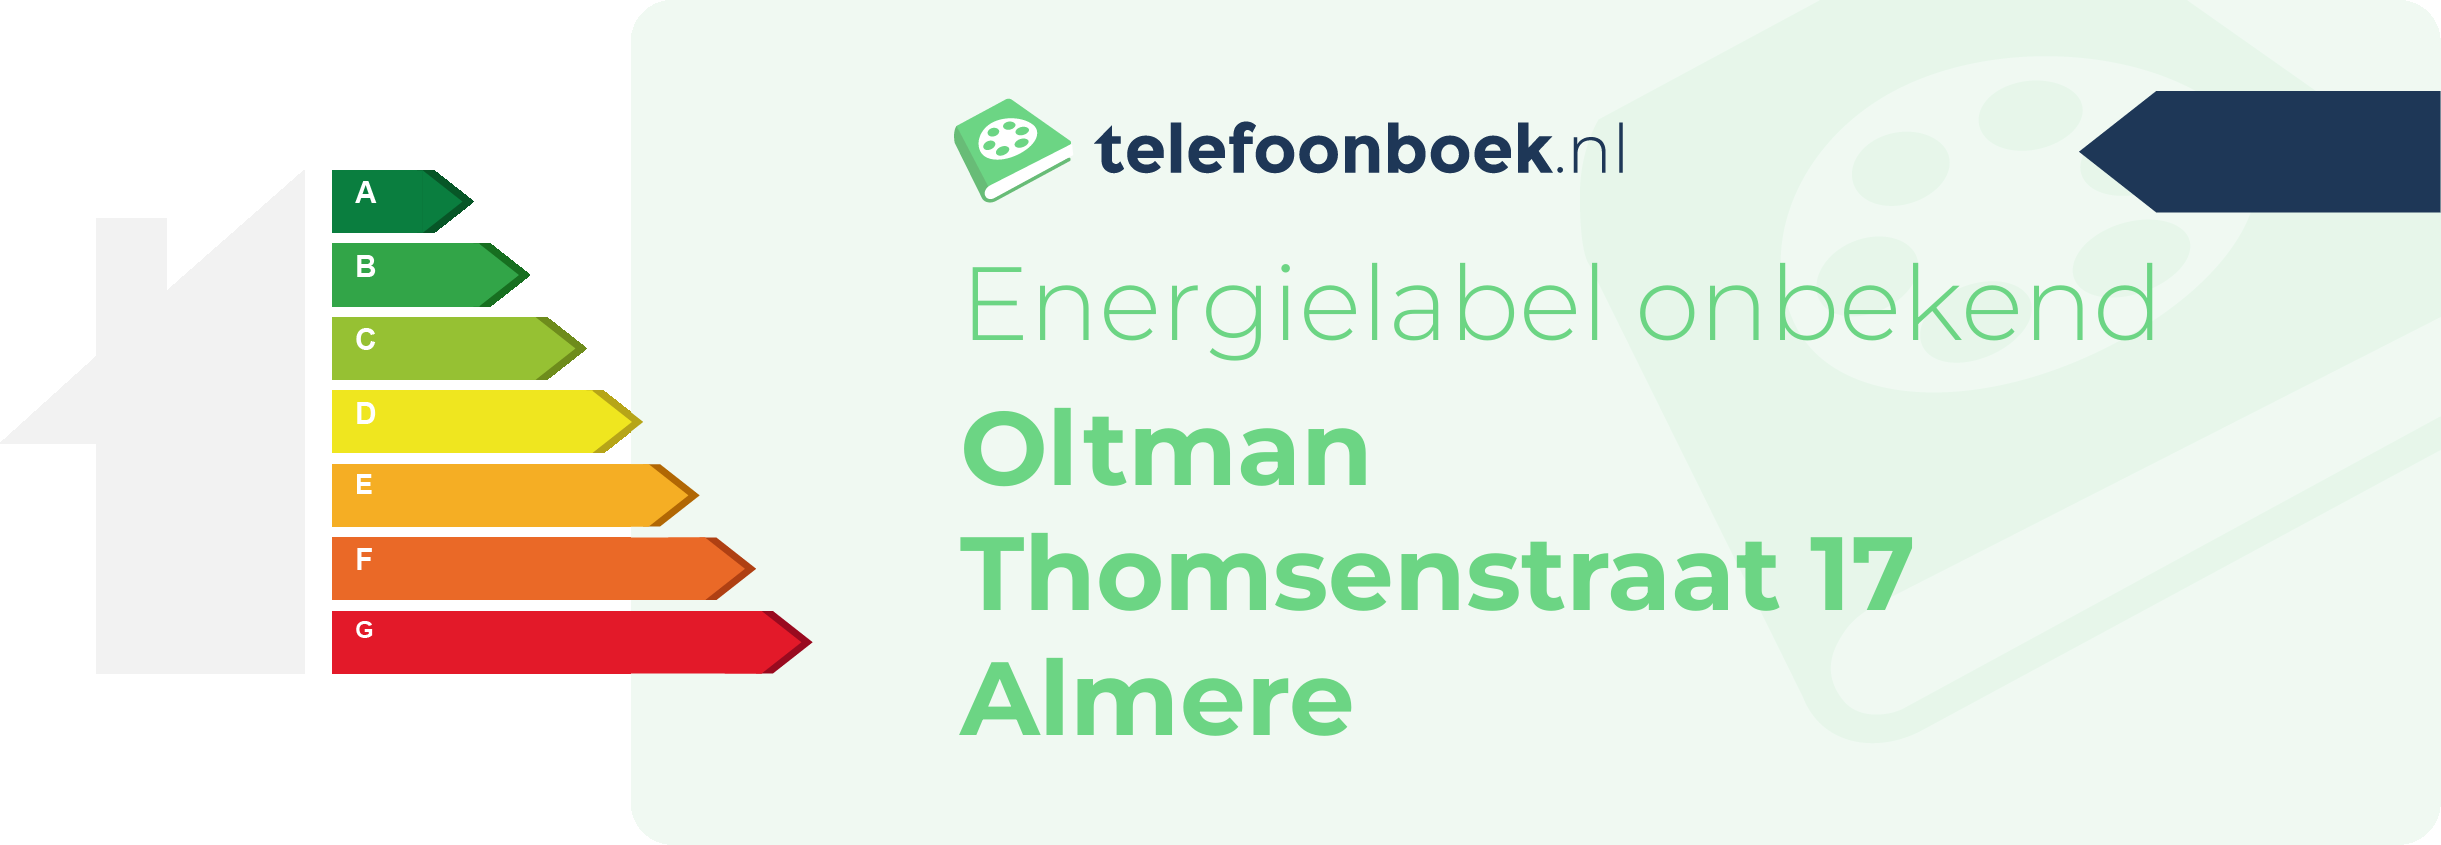 Energielabel Oltman Thomsenstraat 17 Almere